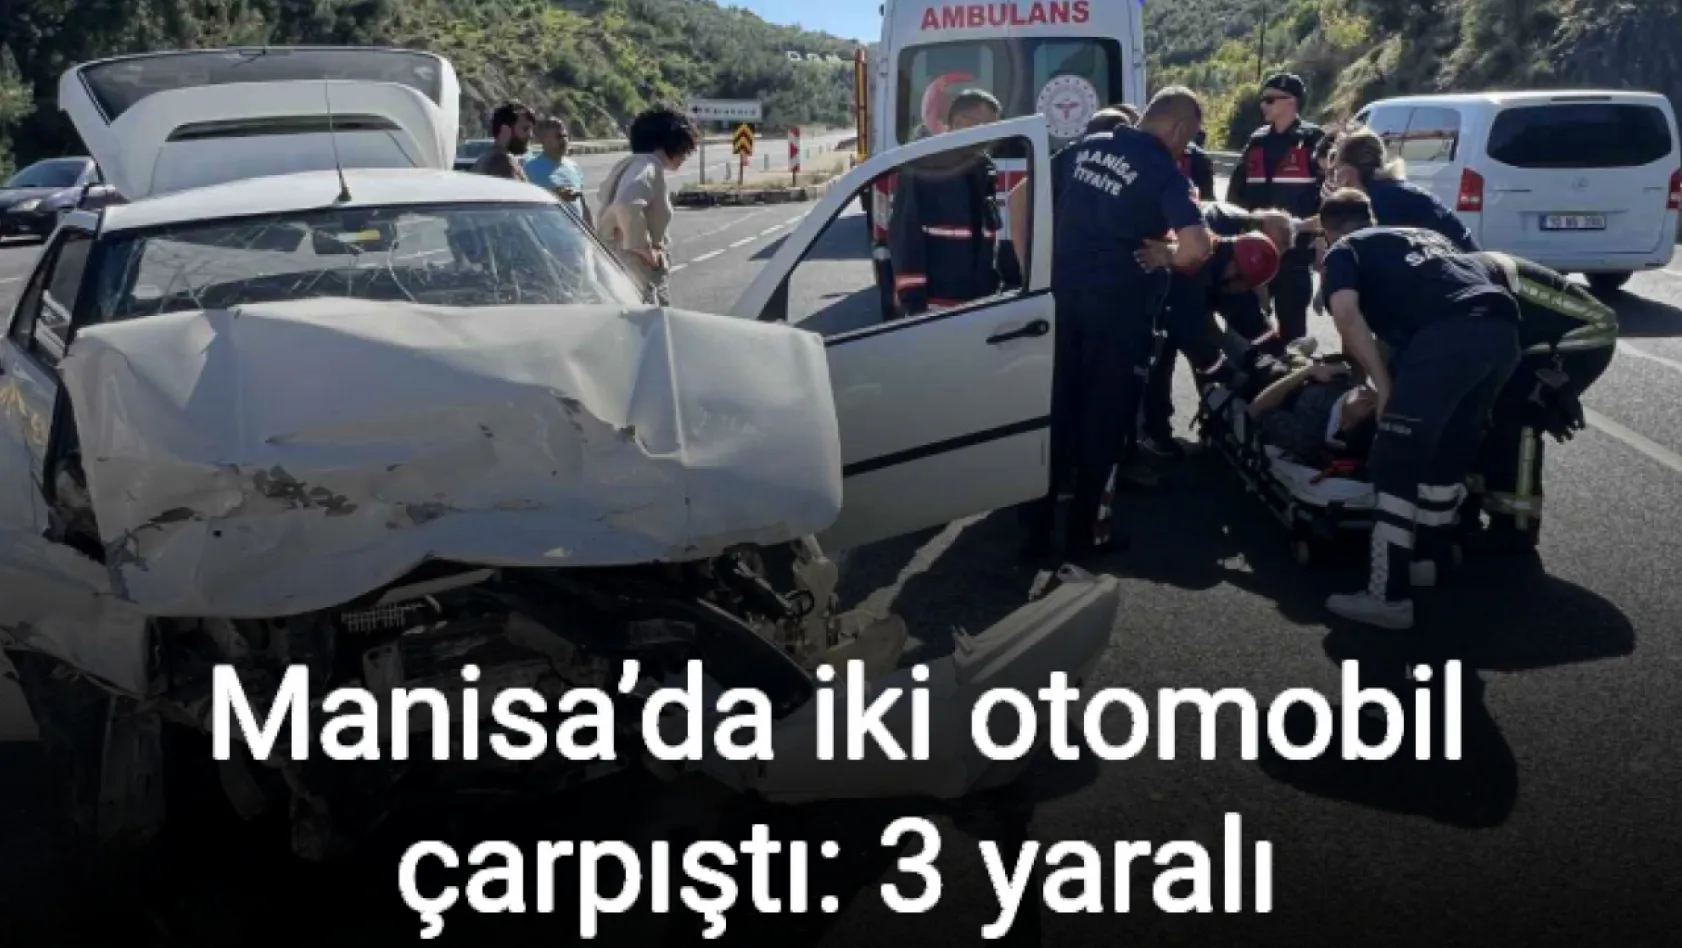 Manisa'da iki otomobil çarpıştı: 3 yaralı